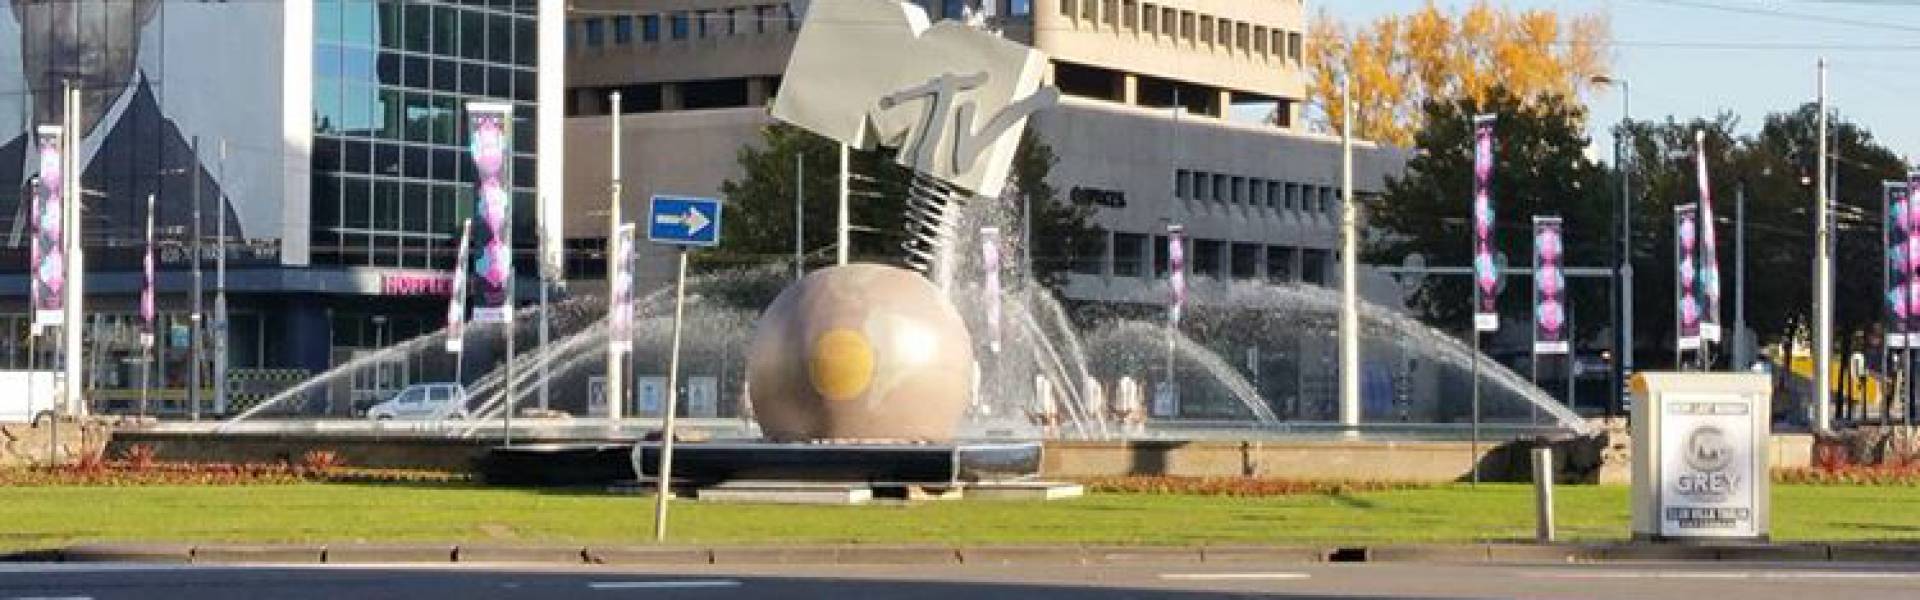 Groot opblaasbaar promotiemateriaal | X-Treme Creations Opblaasbare MTV Globe op rondpunt in fontein met gebouwen op achtergrond VKN Projecten X-Treme Creations